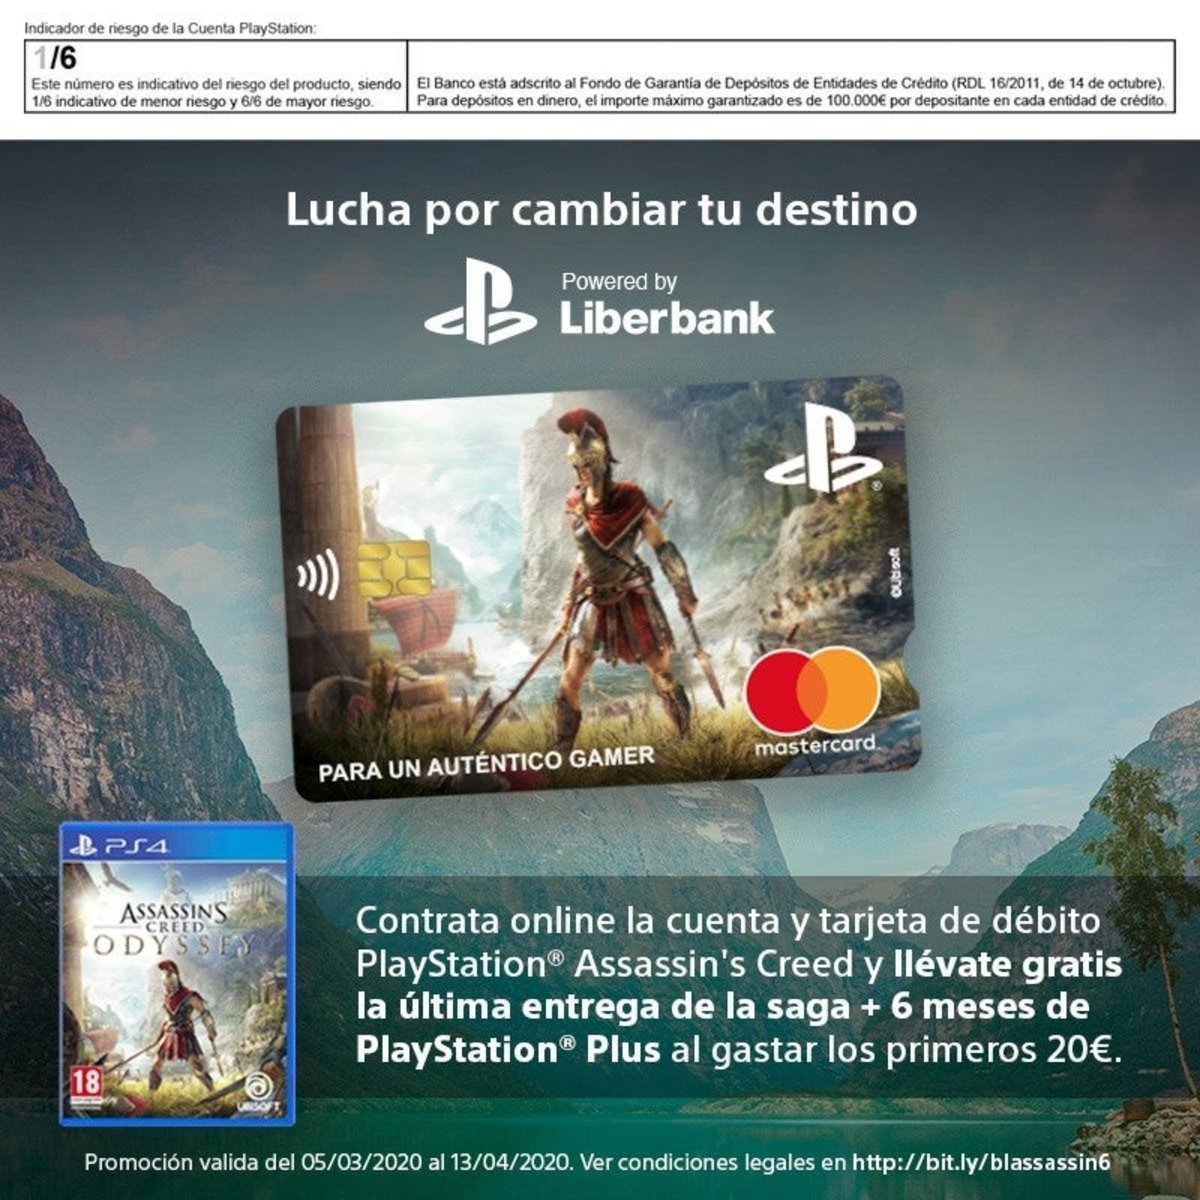 La tarjeta PlayStation te regala ahora Assassin's Creed Odyssey, y más!